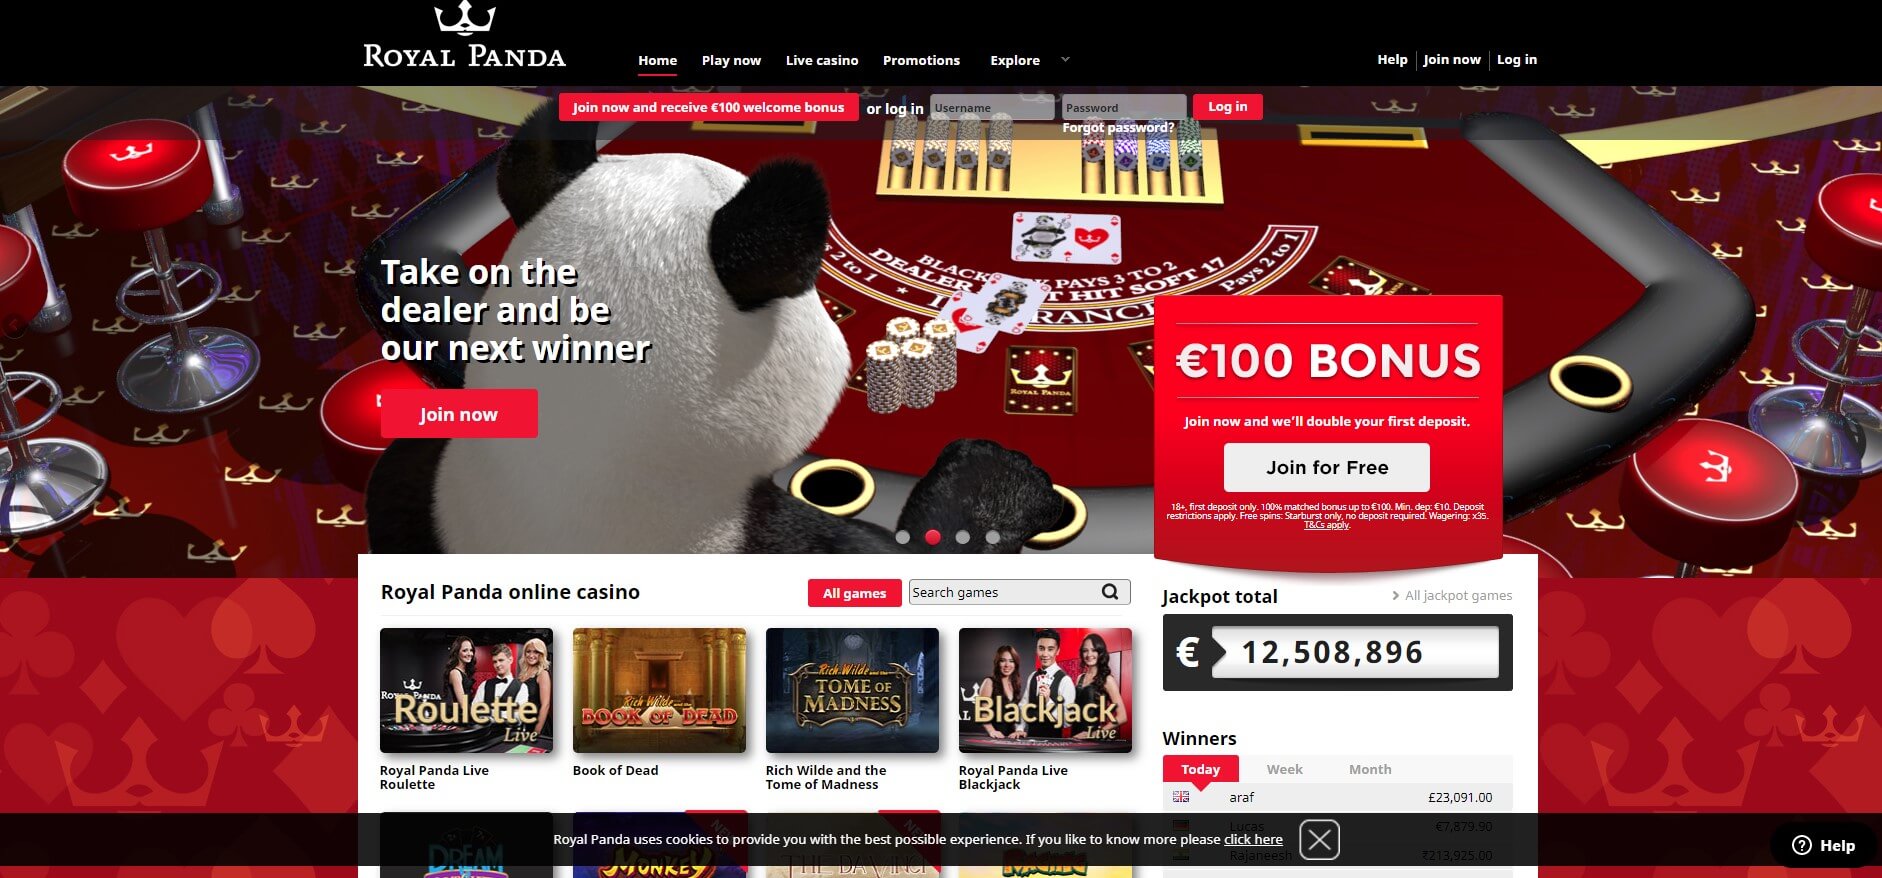 Royal Panda iPhone Casino App